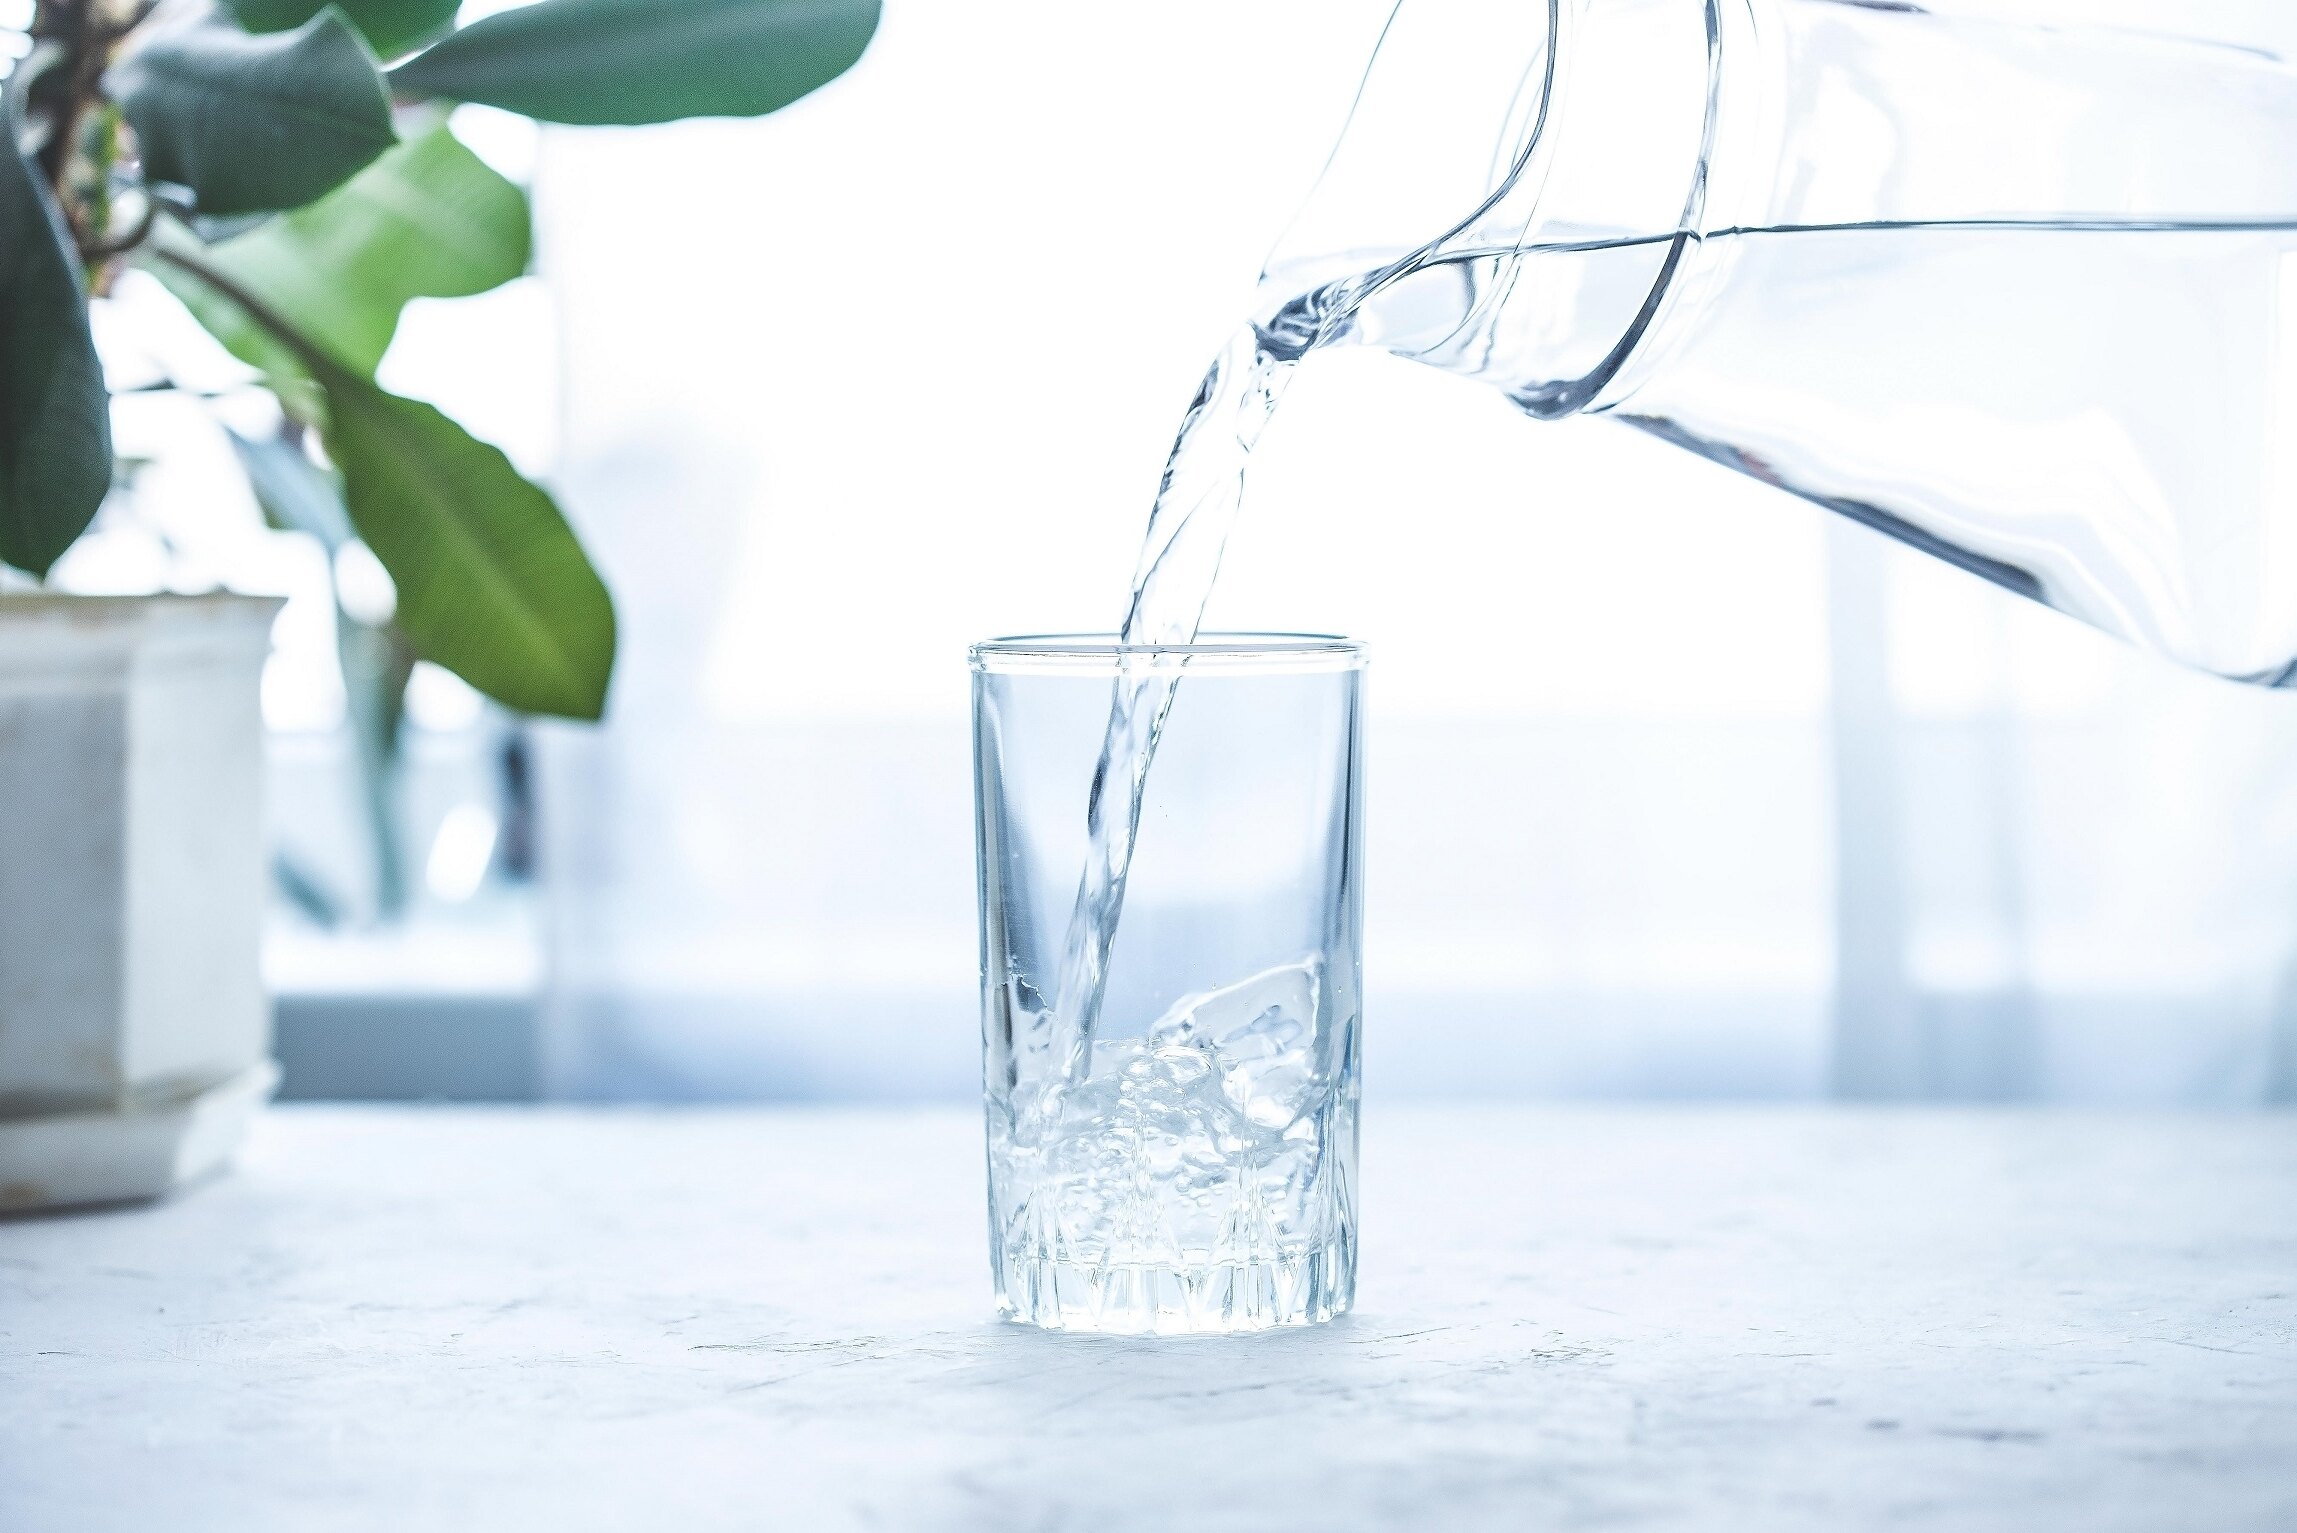 Можно ли пить воду после еды